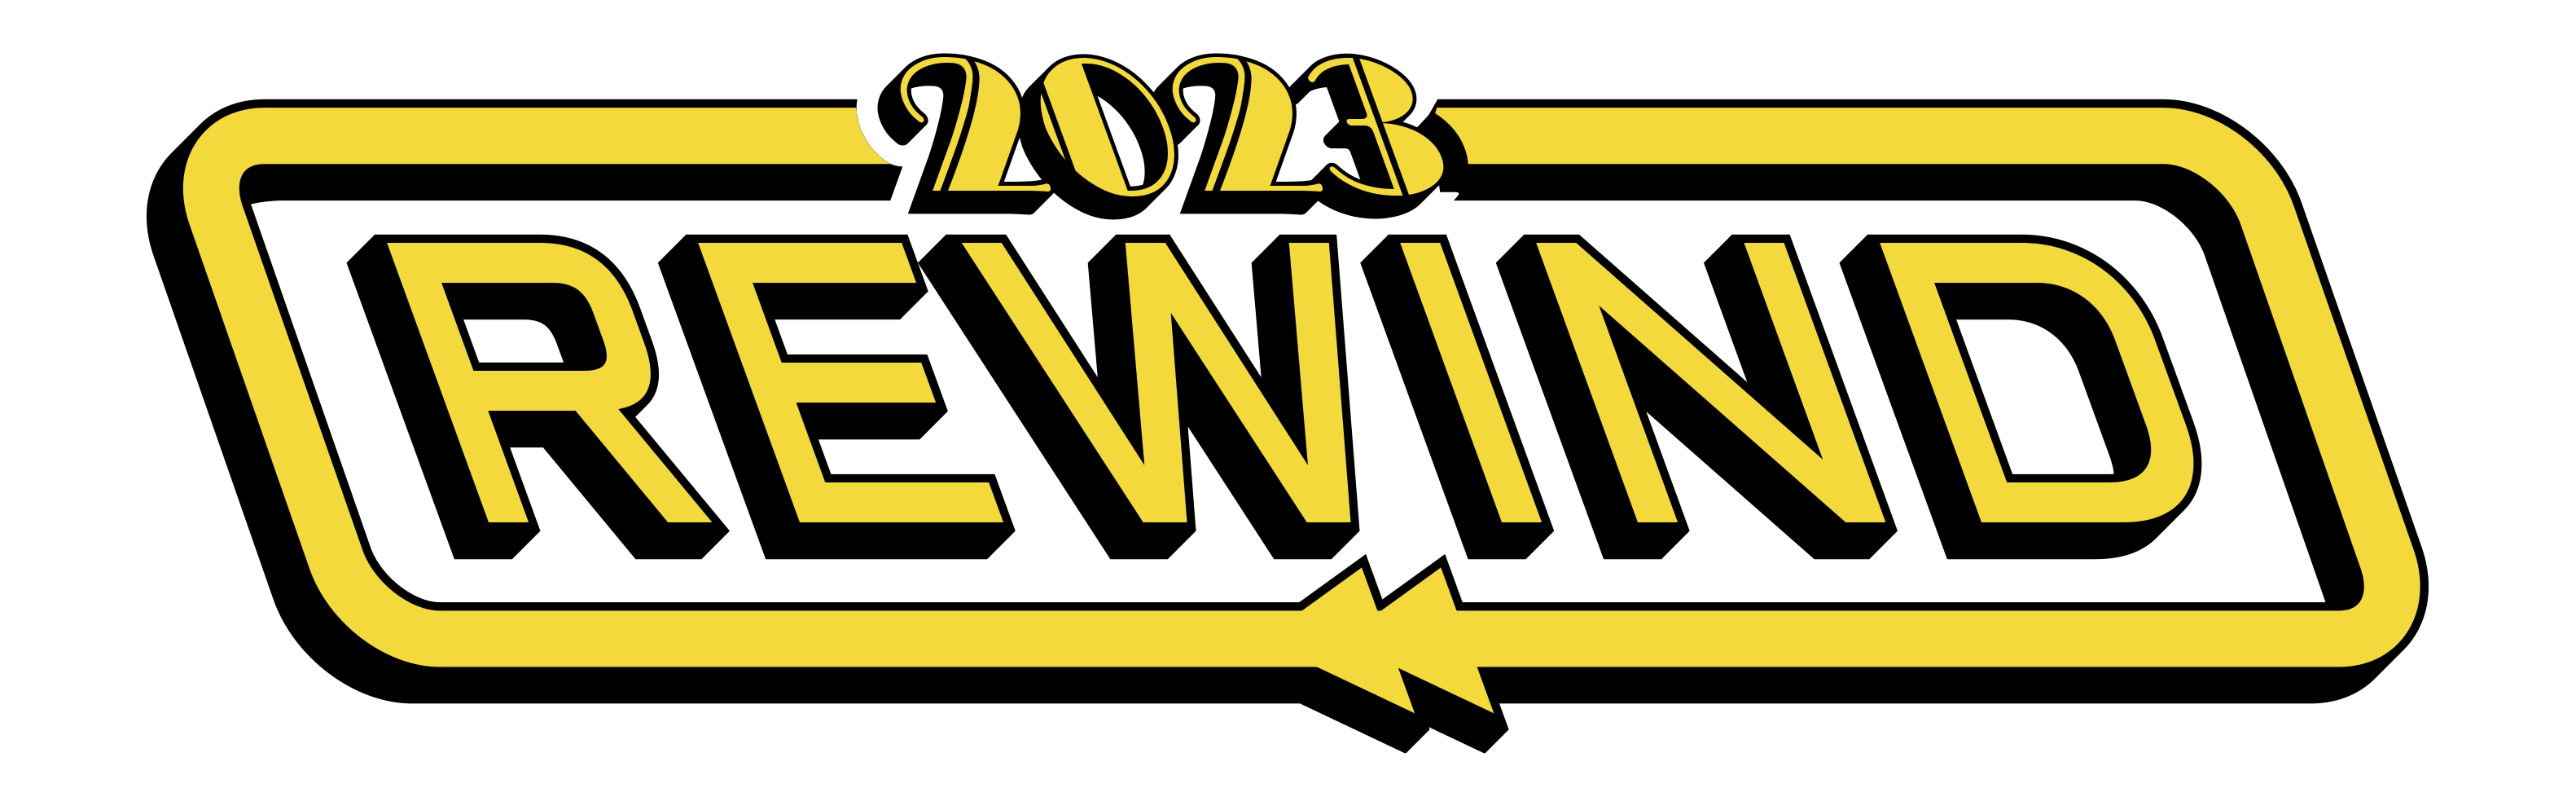 2023 Rewind logo